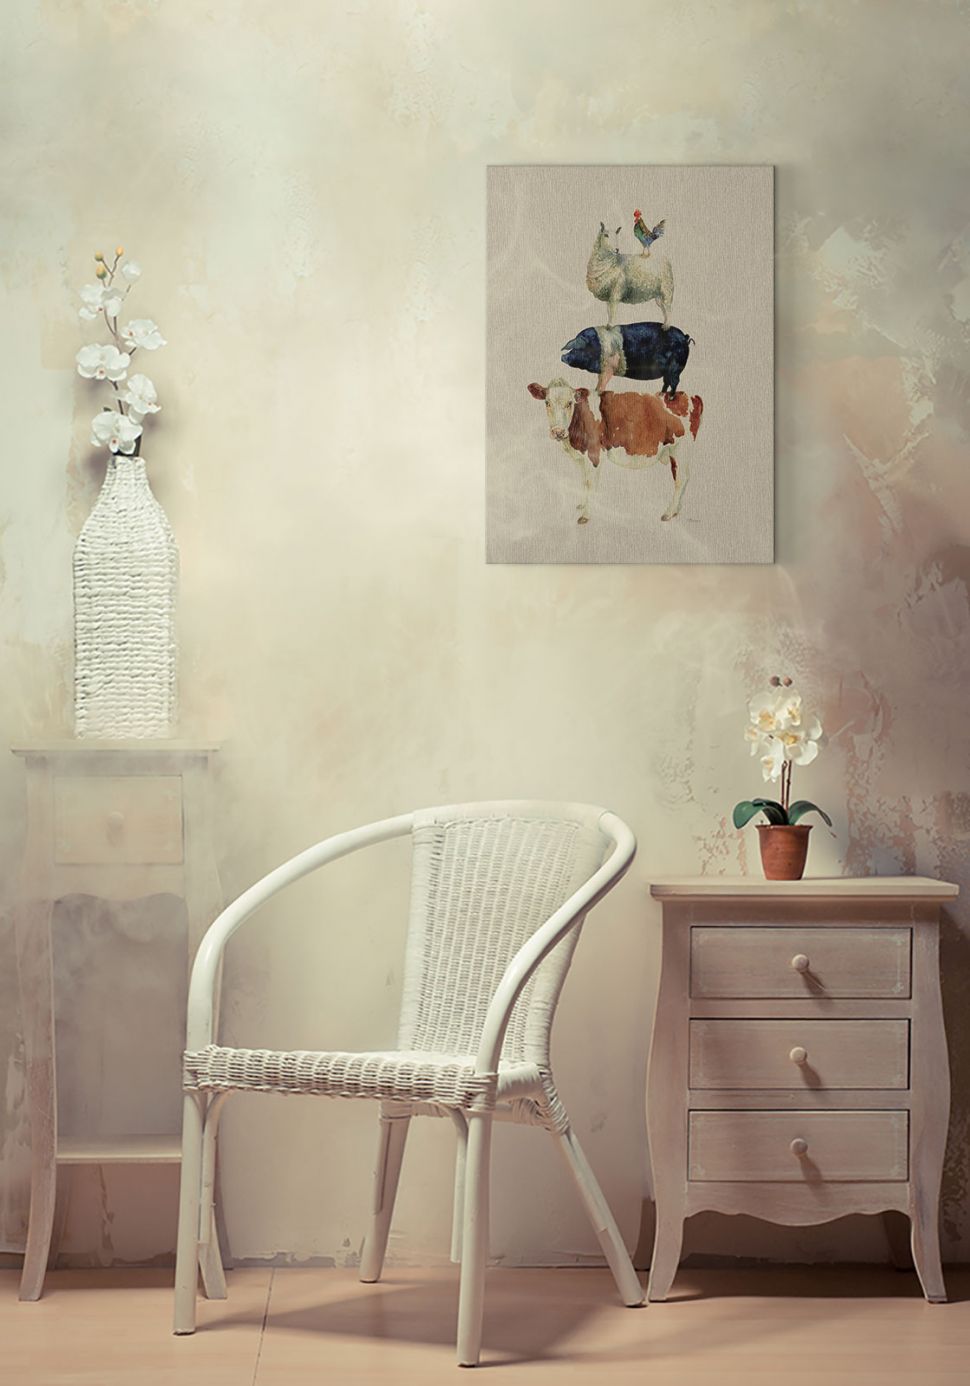 Obraz na płótnie Farmyard Fun wiszący w pokoju na jasnej ścianie nad białym krzesłem z wikliny